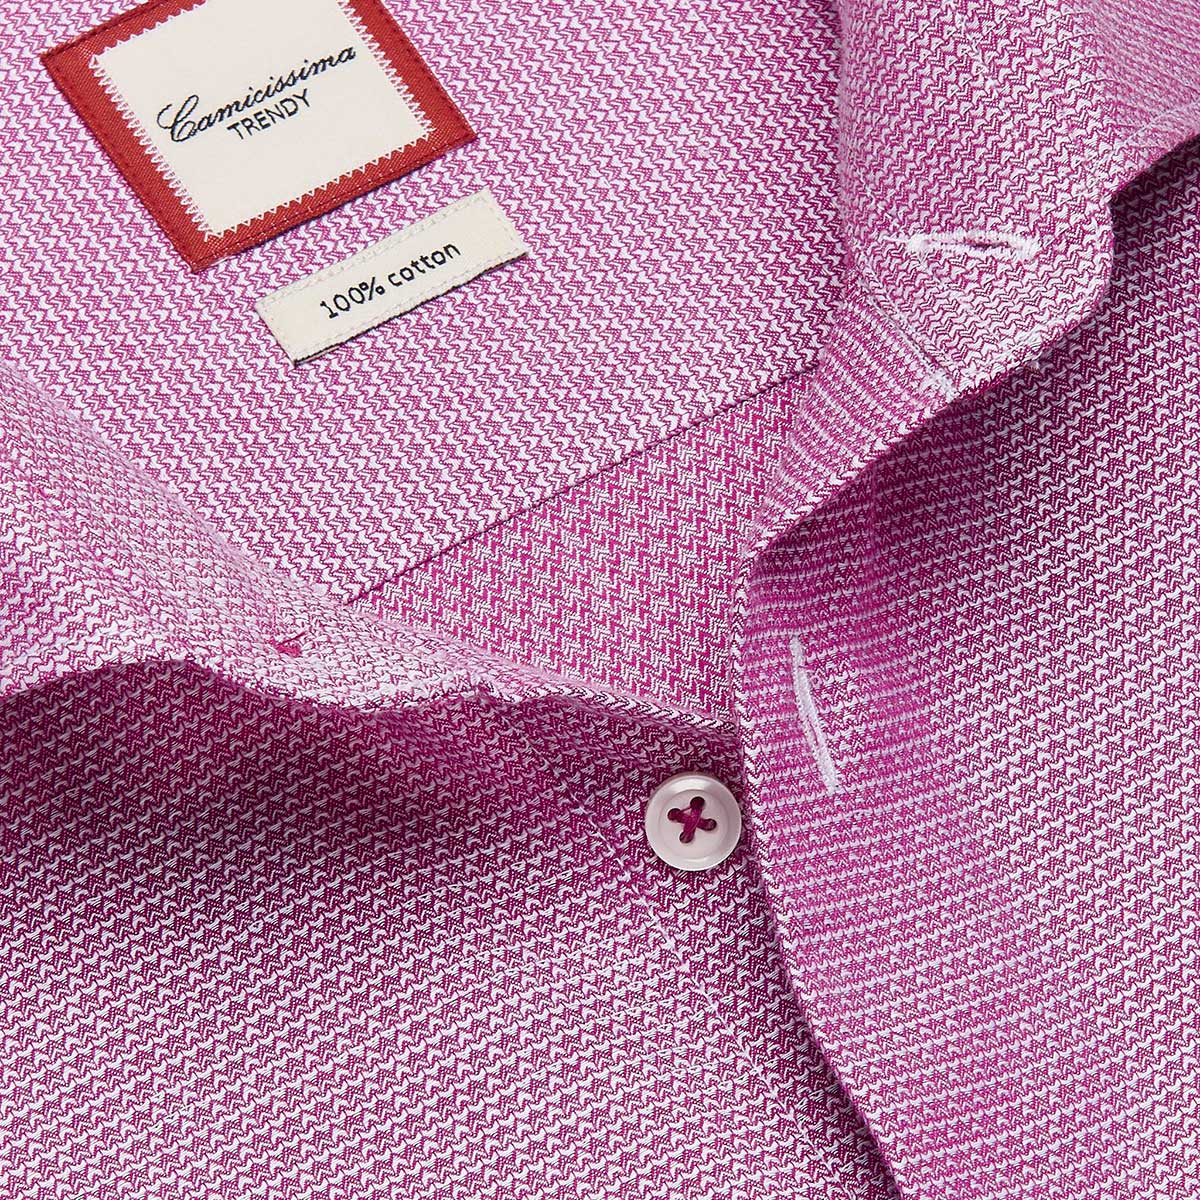 Camicissima Shirt Trendy Cotton | LEVISONS